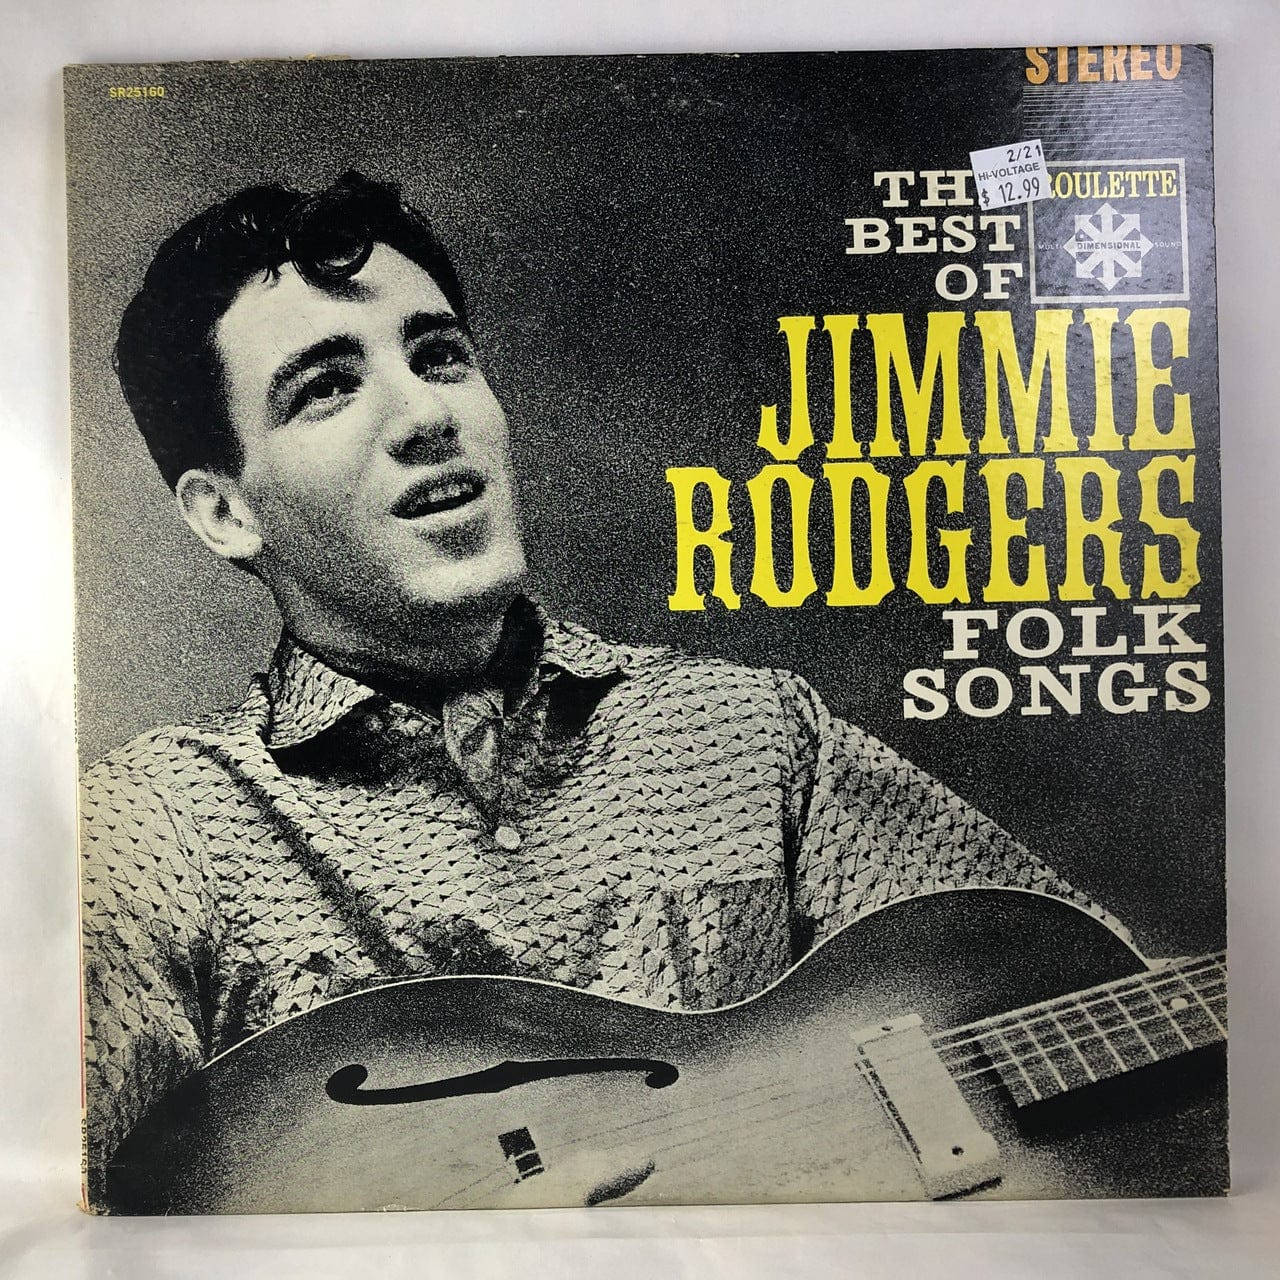 Detbästa Av Jimmie Rodgers Albumomslag Wallpaper